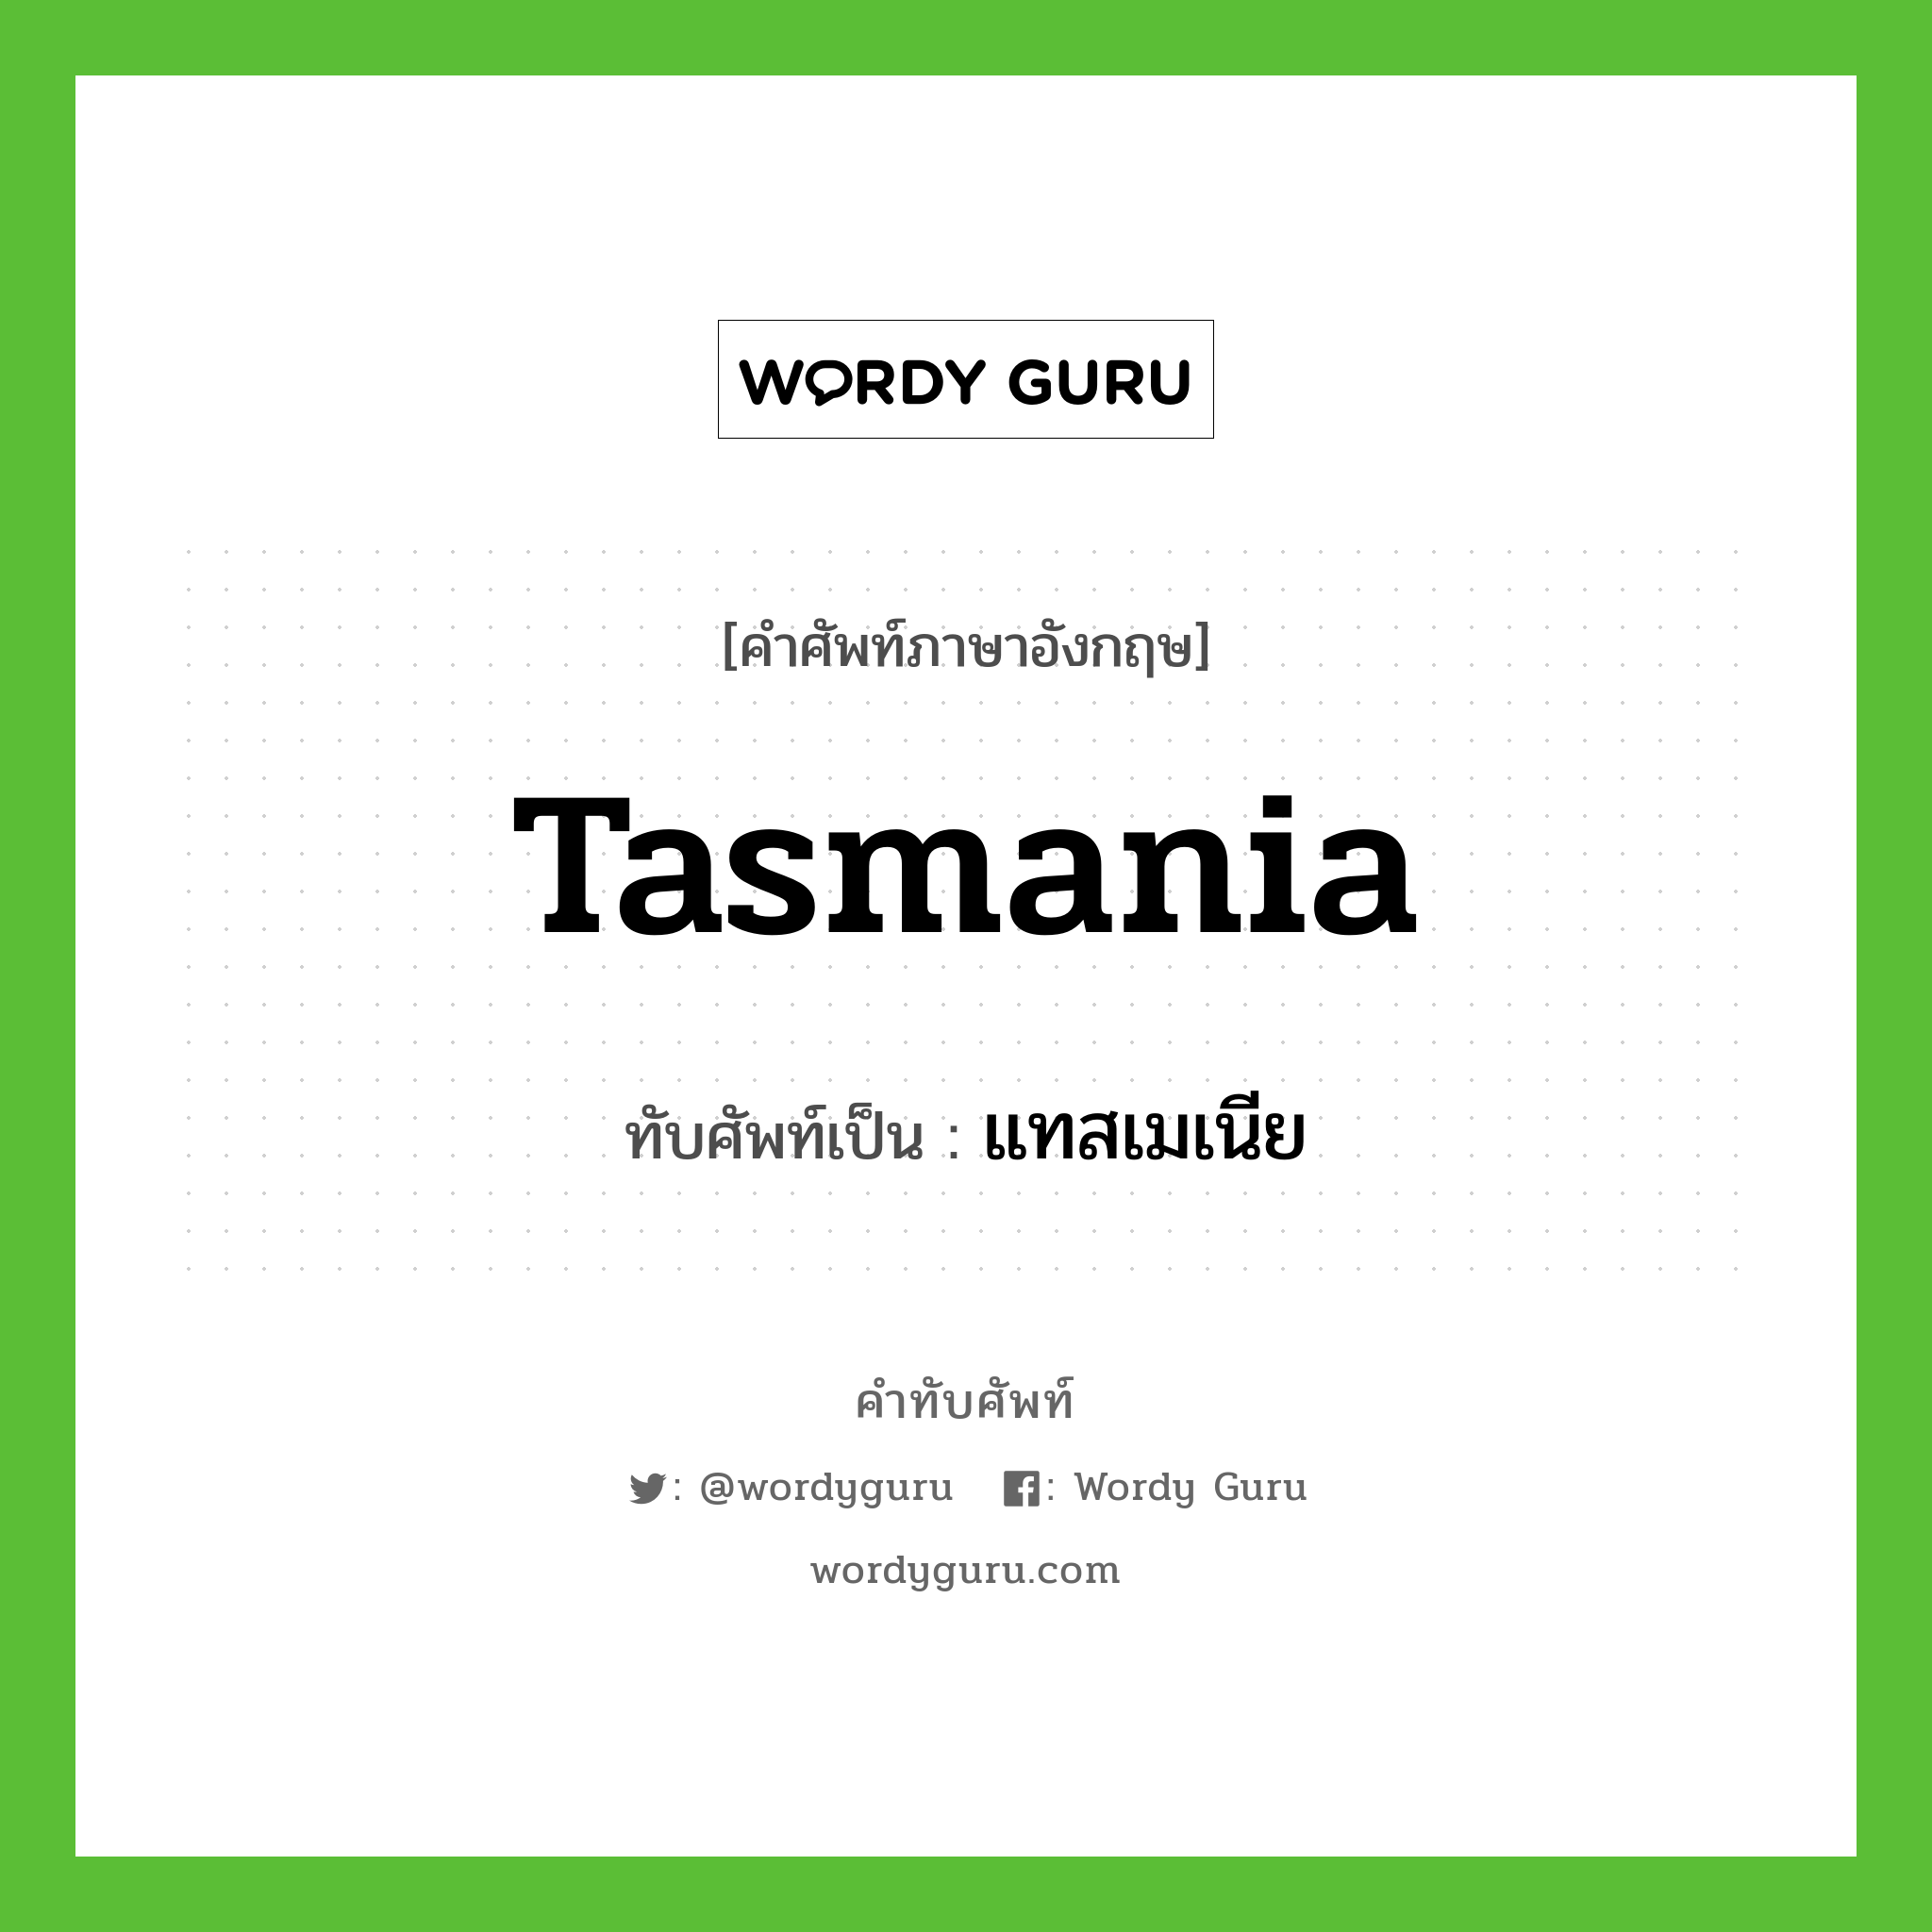 แทสเมเนีย เขียนอย่างไร?, คำศัพท์ภาษาอังกฤษ แทสเมเนีย ทับศัพท์เป็น Tasmania